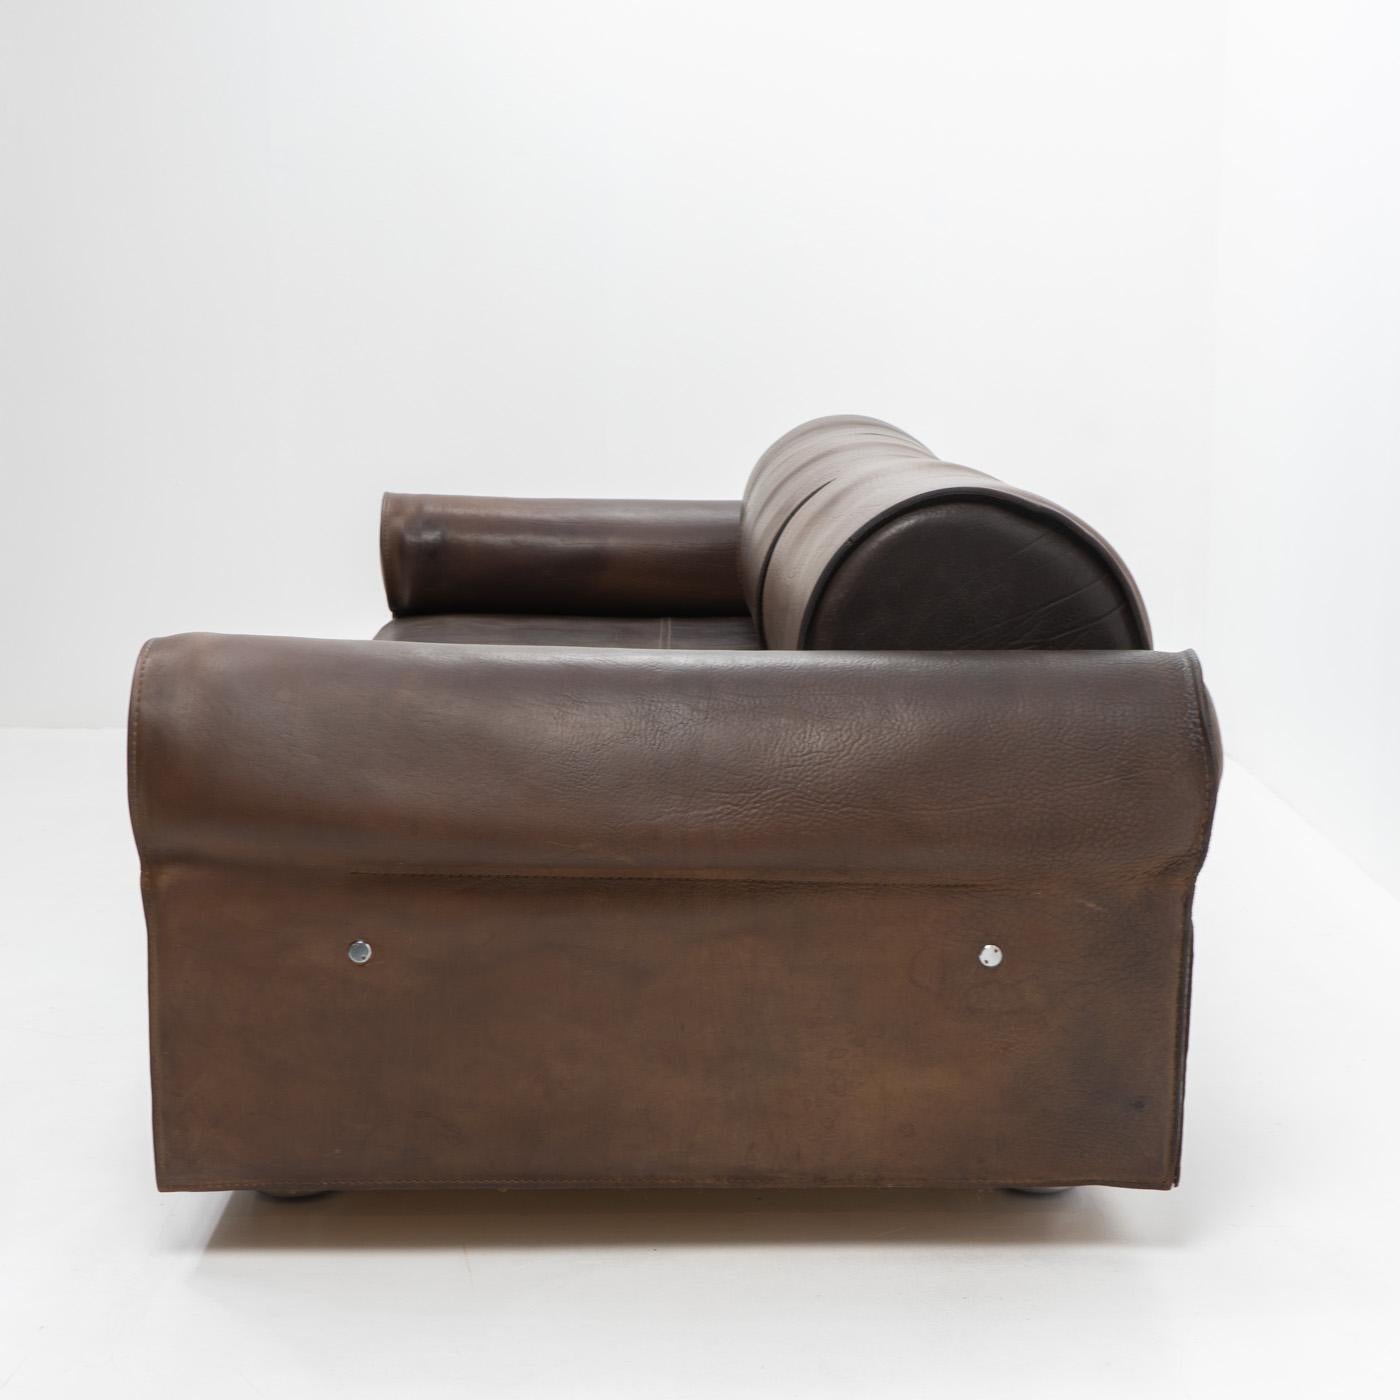 Italian Design Marzio Cecchi Three-seater Sofa in Brown Buffalo Leather, 1970s For Sale 3